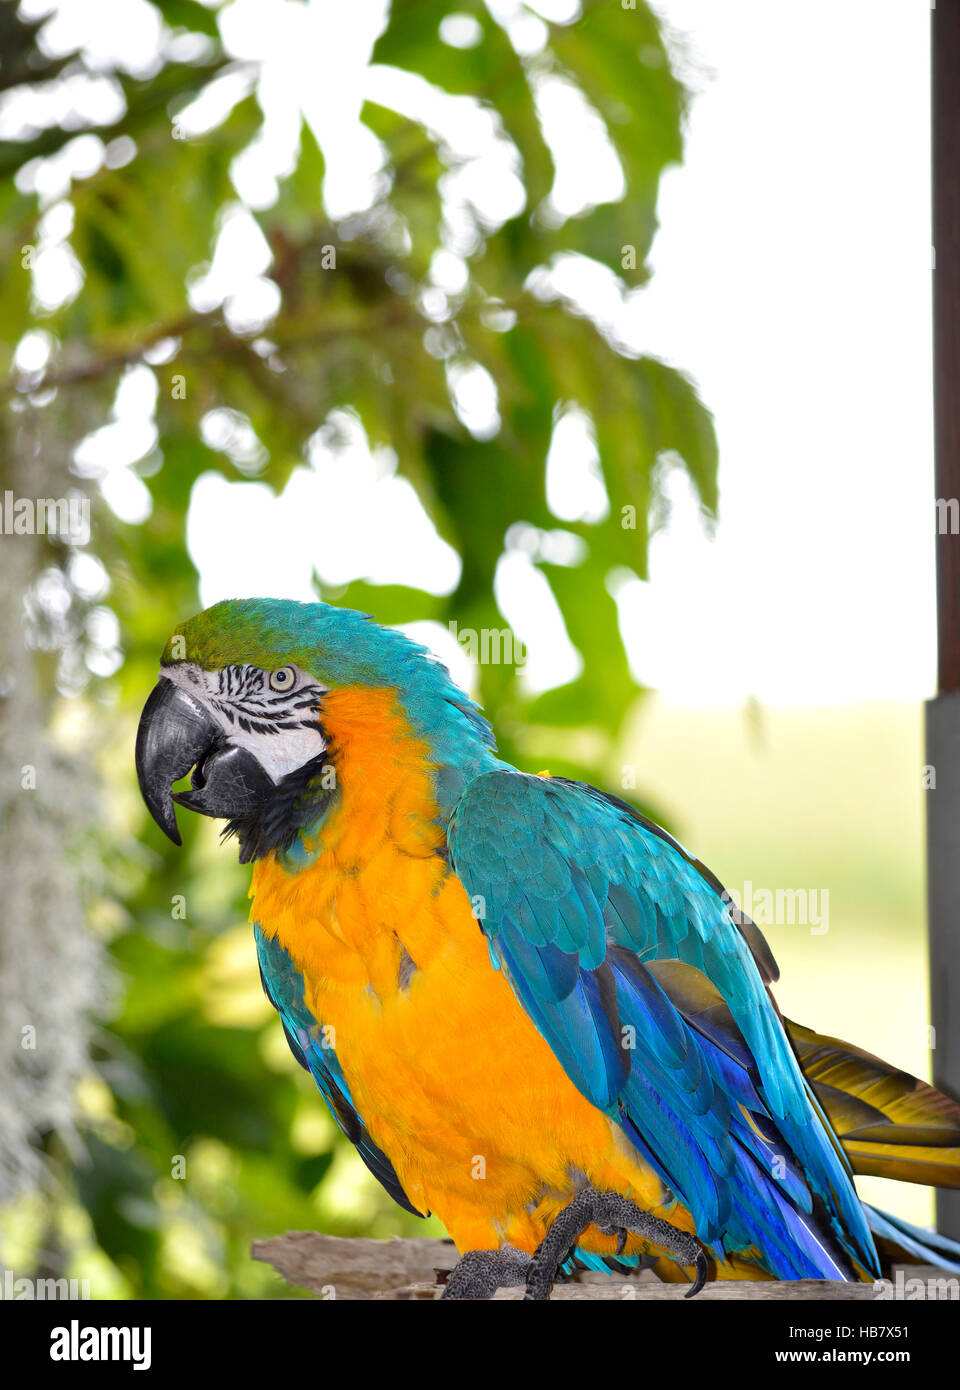 yellow macaw Latin name Ara ararauna Stock Photo - Alamy